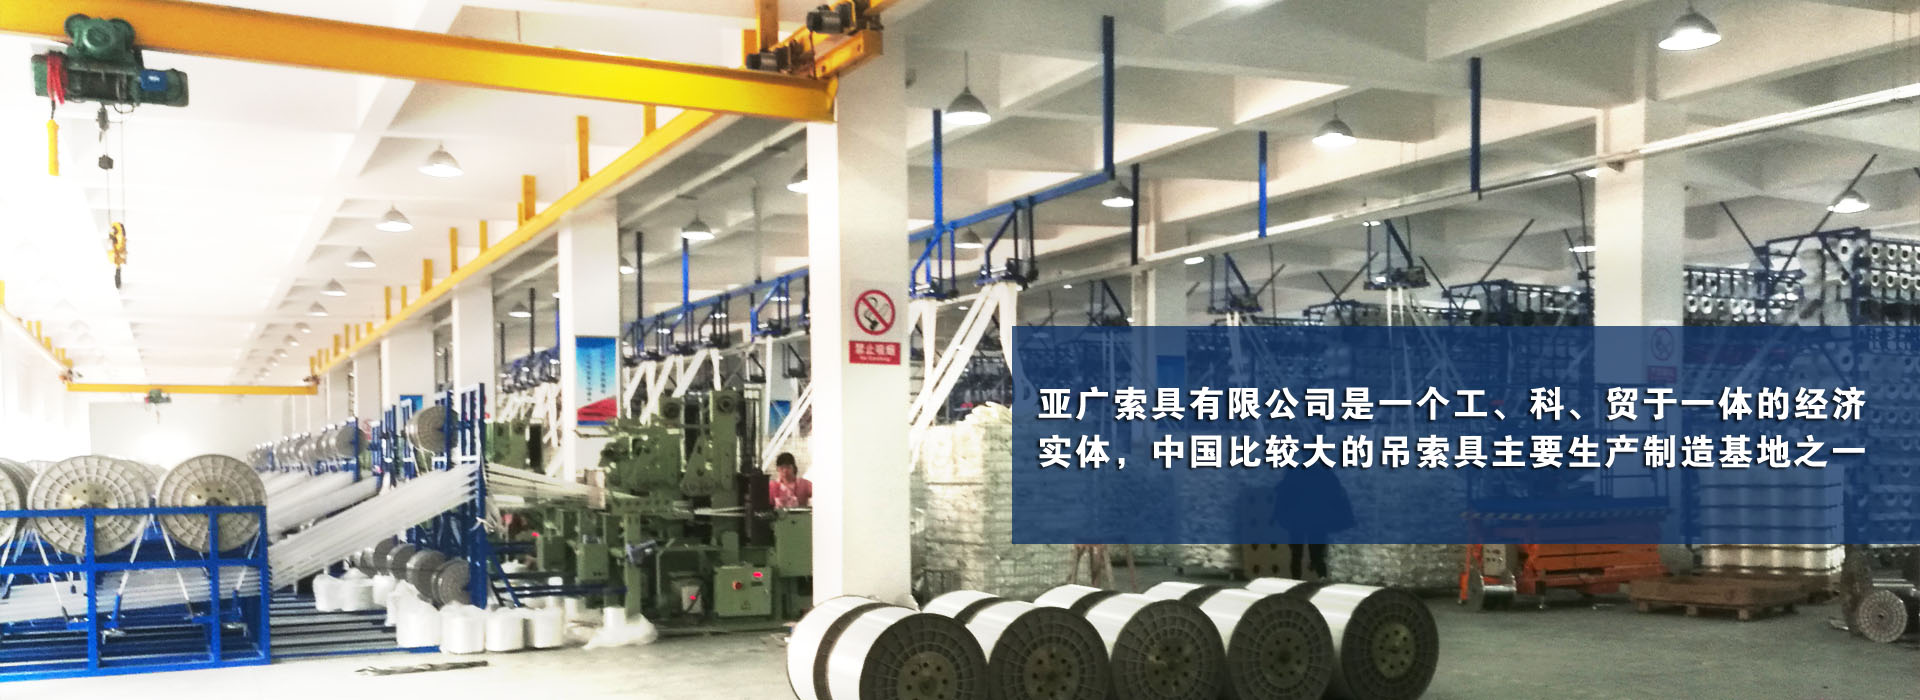 亚广索具股份有限公司是一个工、科、贸于一体的经济实体，中国比较大的吊索具主要生产制造基地之一